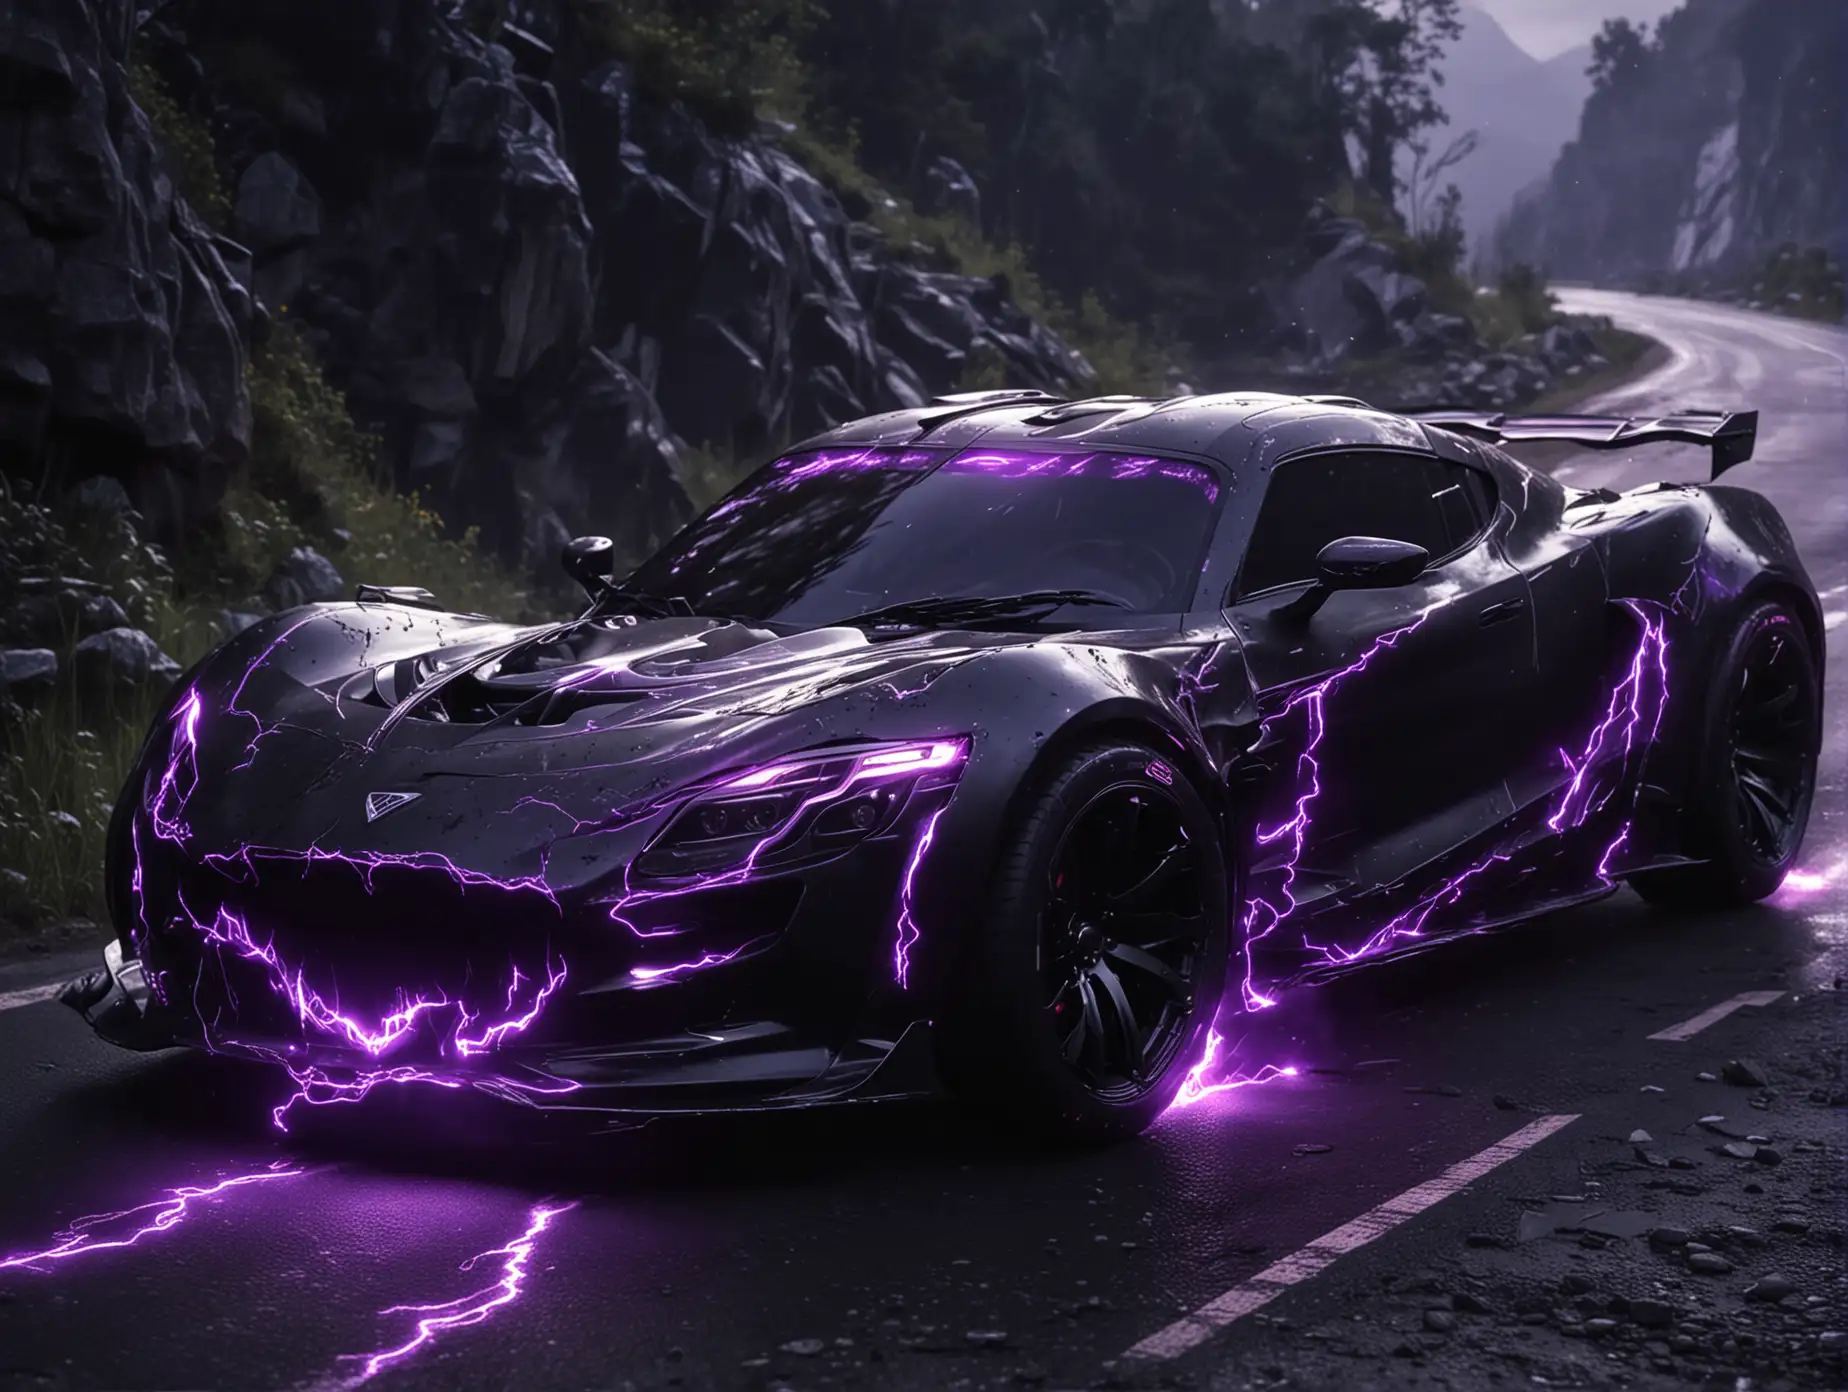 Futuristic-Venom-Night-Car-Tuning-Metallic-Black-Downhill-Racing-with-Violet-Lightning-Marks